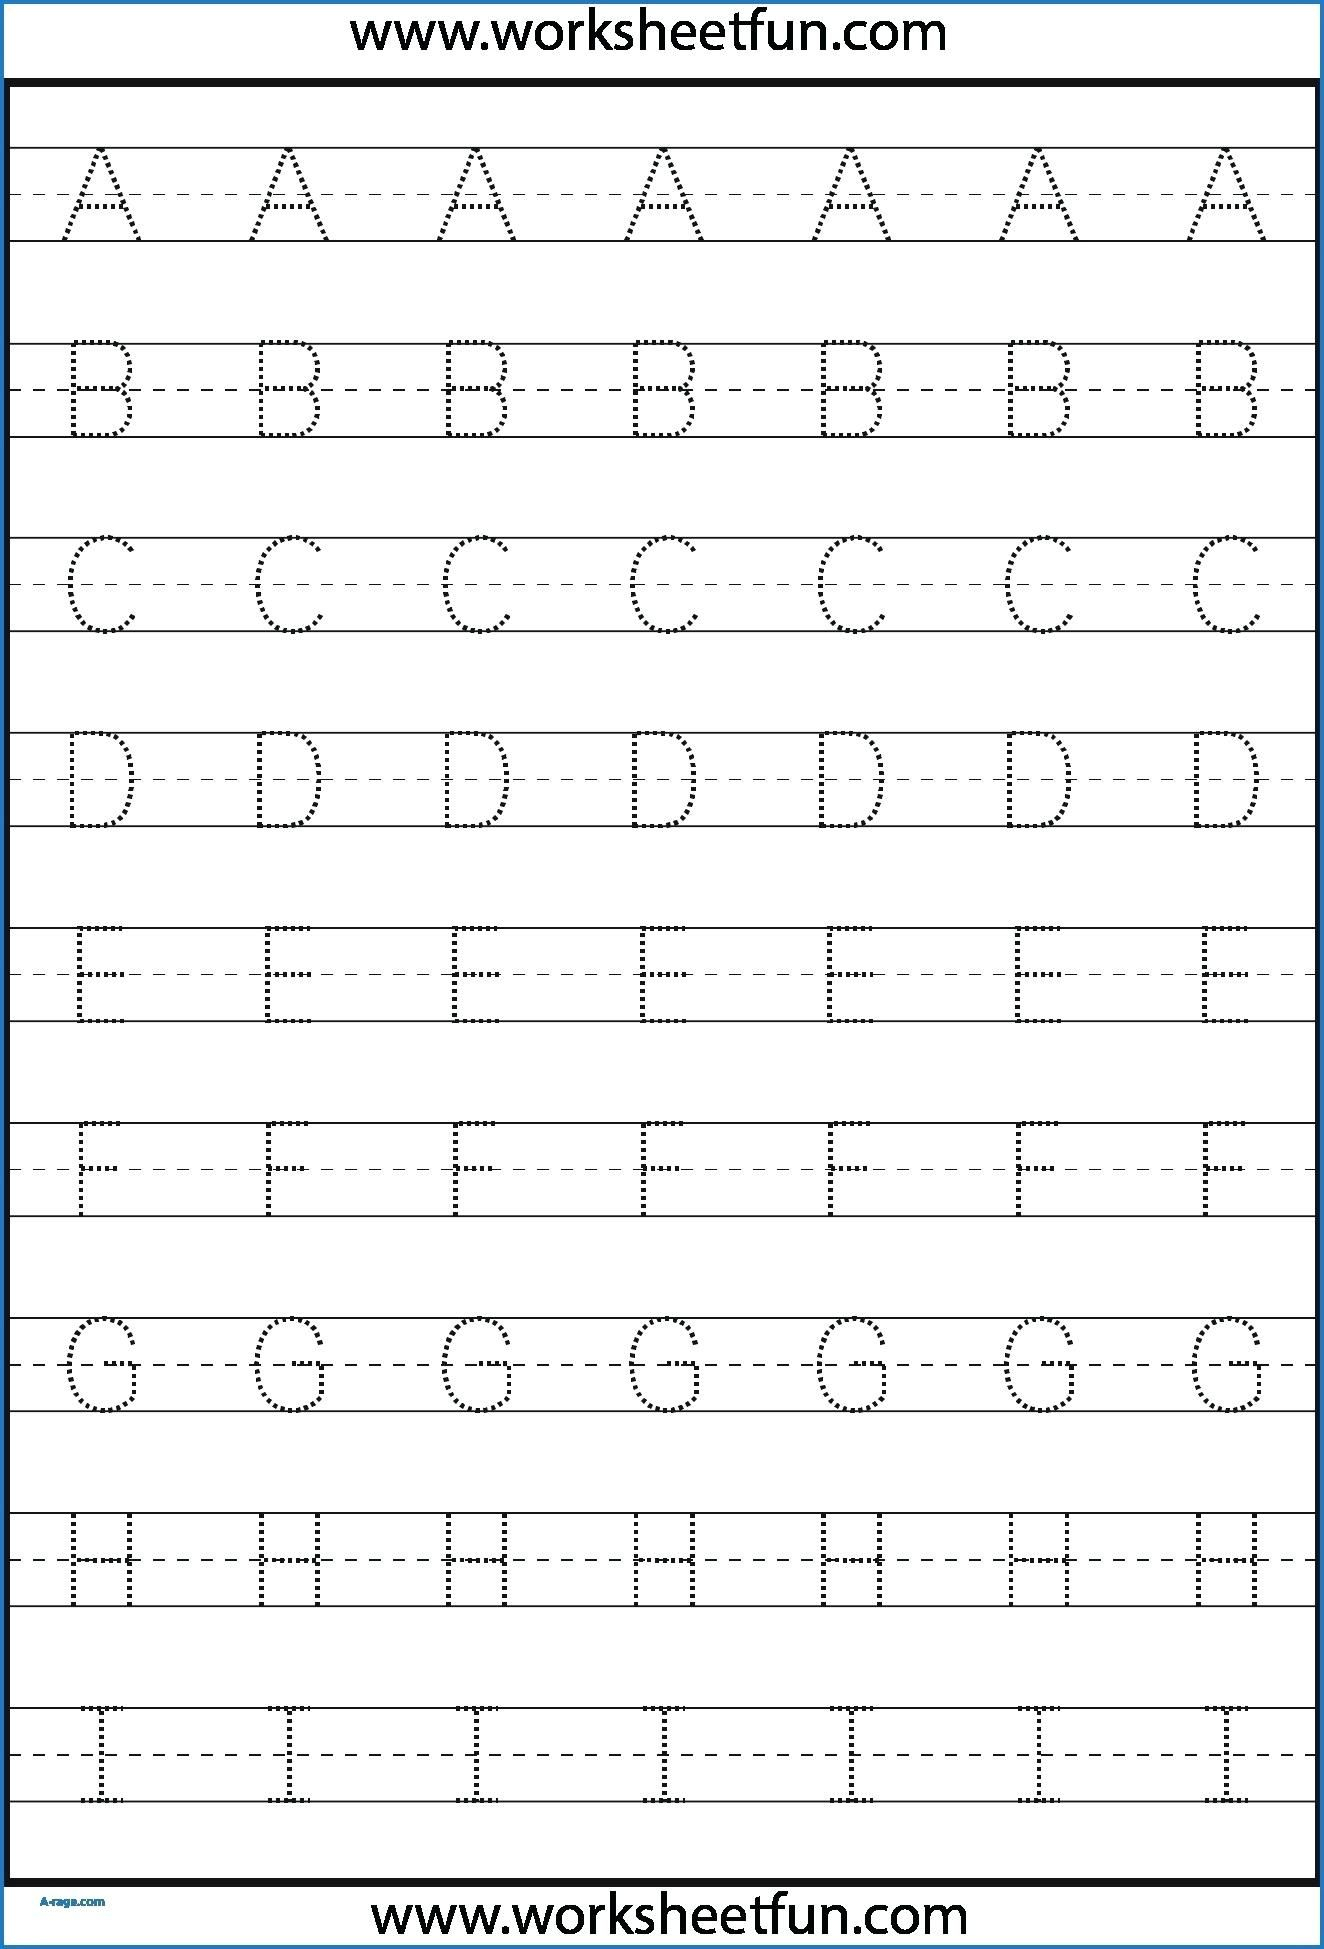 Kindergarten Letter Tracing Worksheets Pdf - Wallpaper Image intended for Letter Tracing Worksheets For Kindergarten Pdf